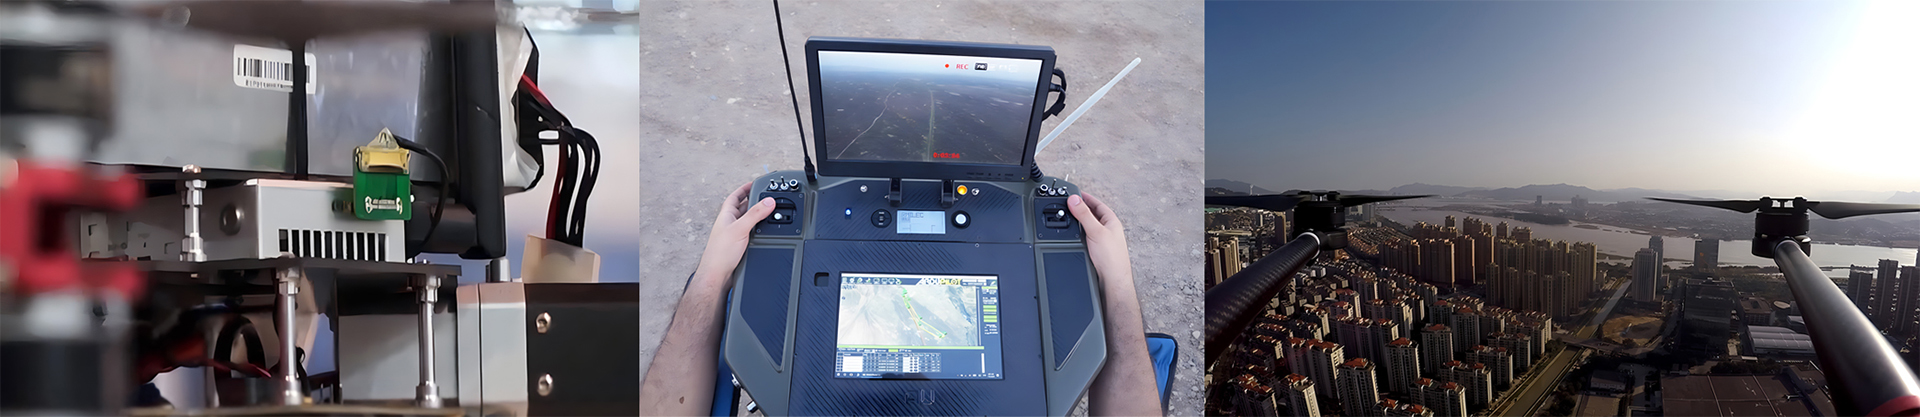 FIP2410-10km-UAV-Digital-Video-Sender-application-Senarios